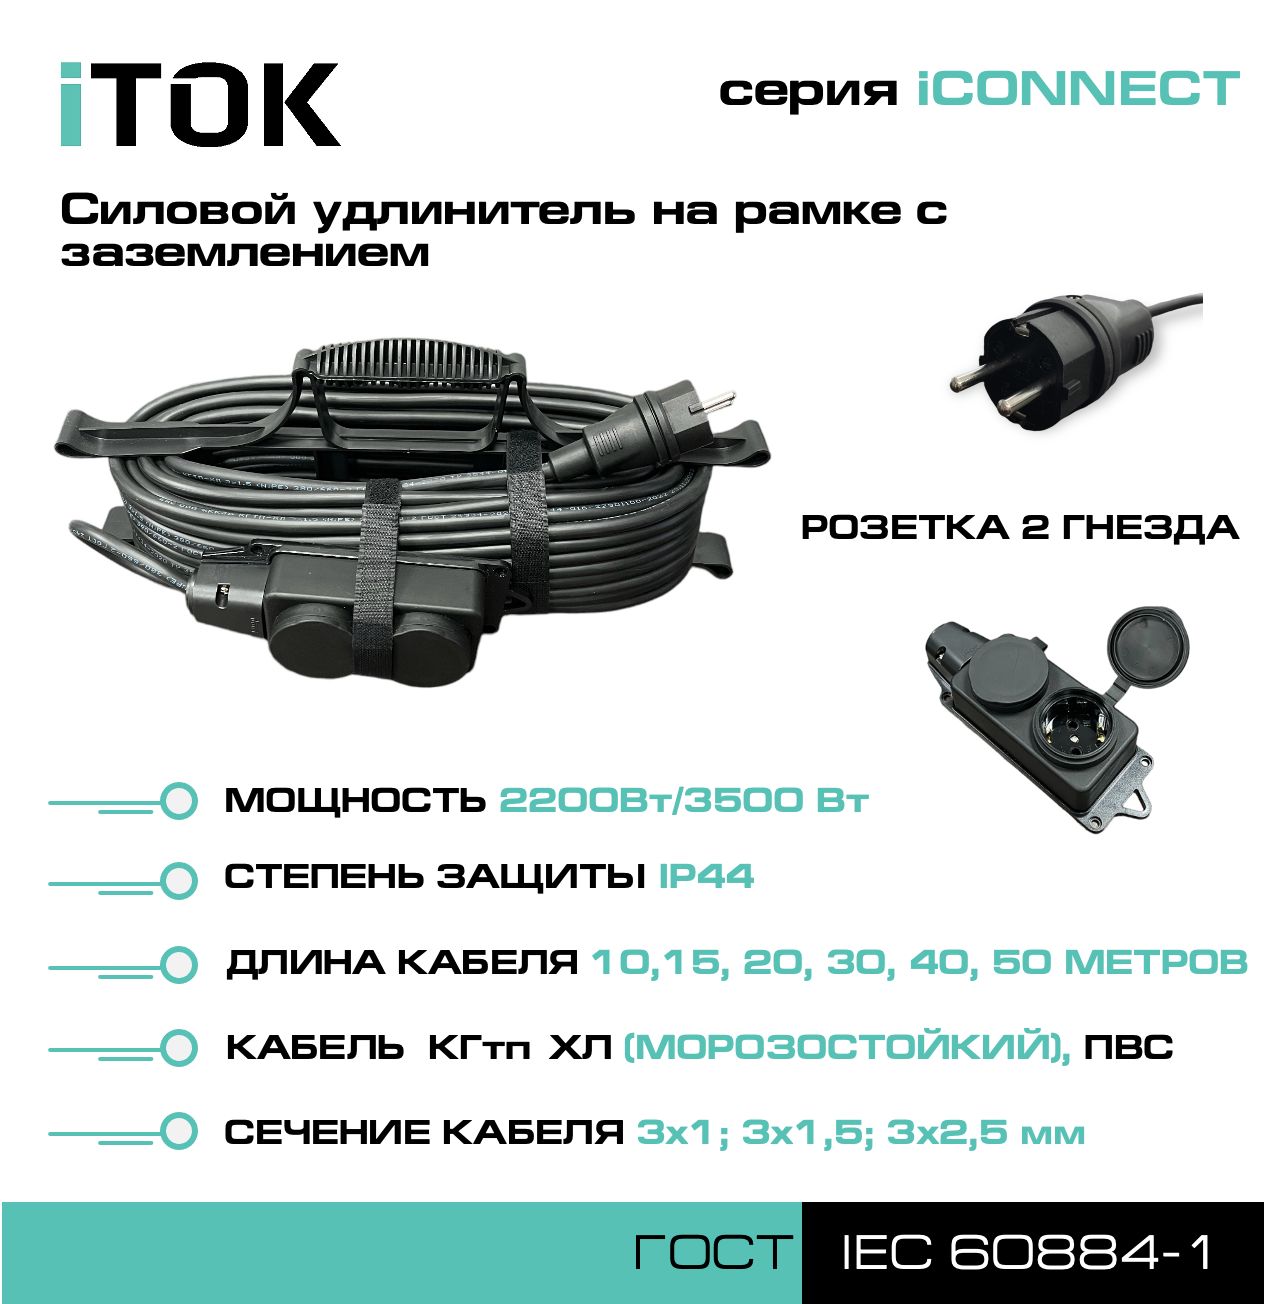 Удлинитель на рамке с заземлением серии iTOK iCONNECT КГтп-ХЛ 3х2,5 мм 2 гнезда IP44 15 м зарядные гнезда usb в виде клавиши marina 4 8 а more 10264237